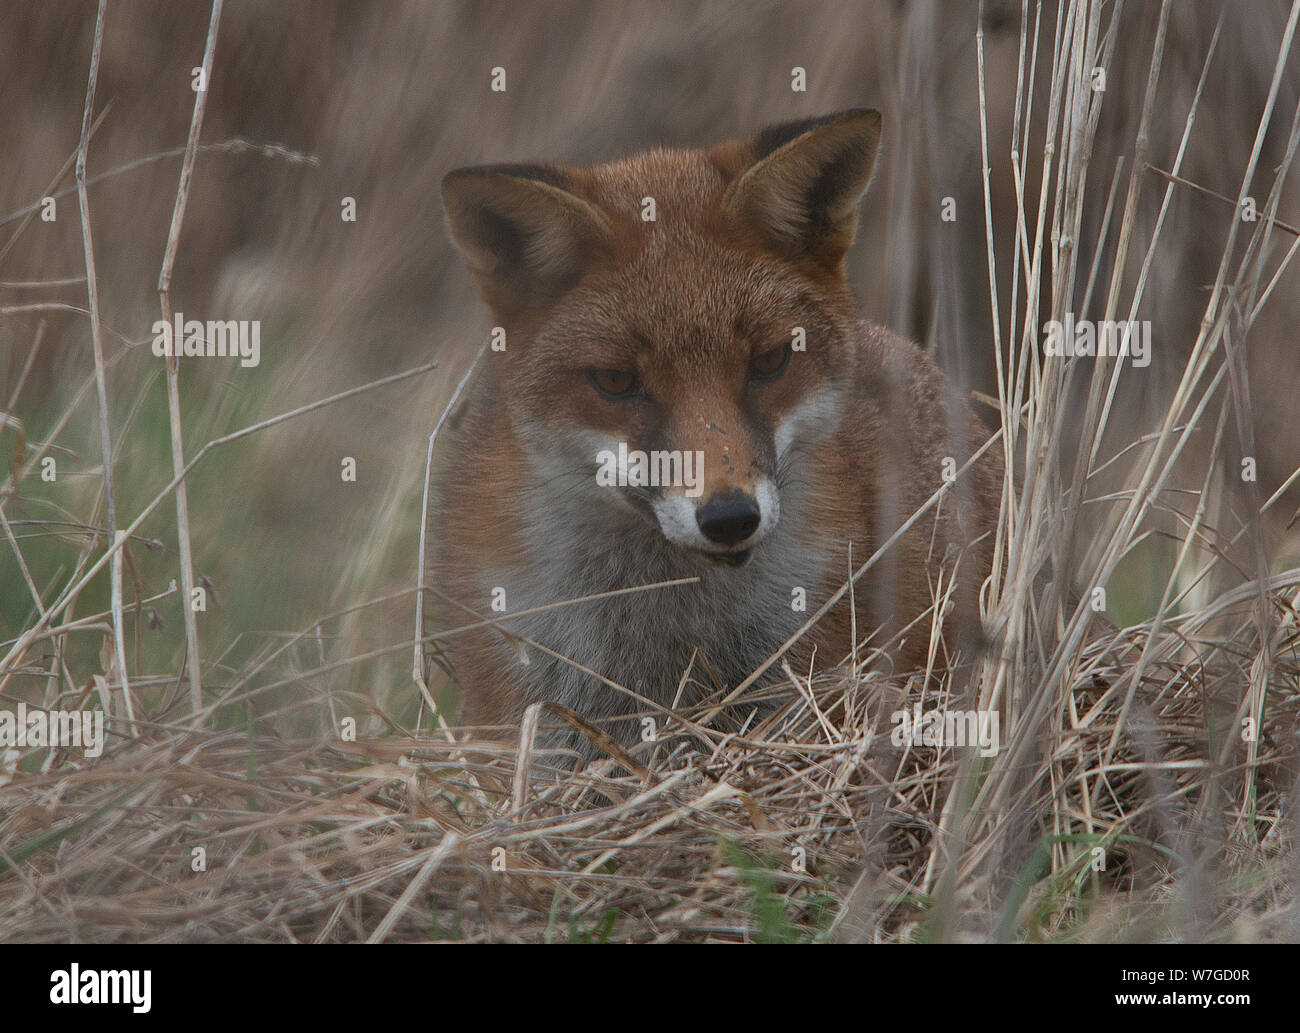 Fox out caccia visto in primo piano della sua testa con orecchie sollevate e gli occhi focalizzati sulla preda in sottobosco Foto Stock